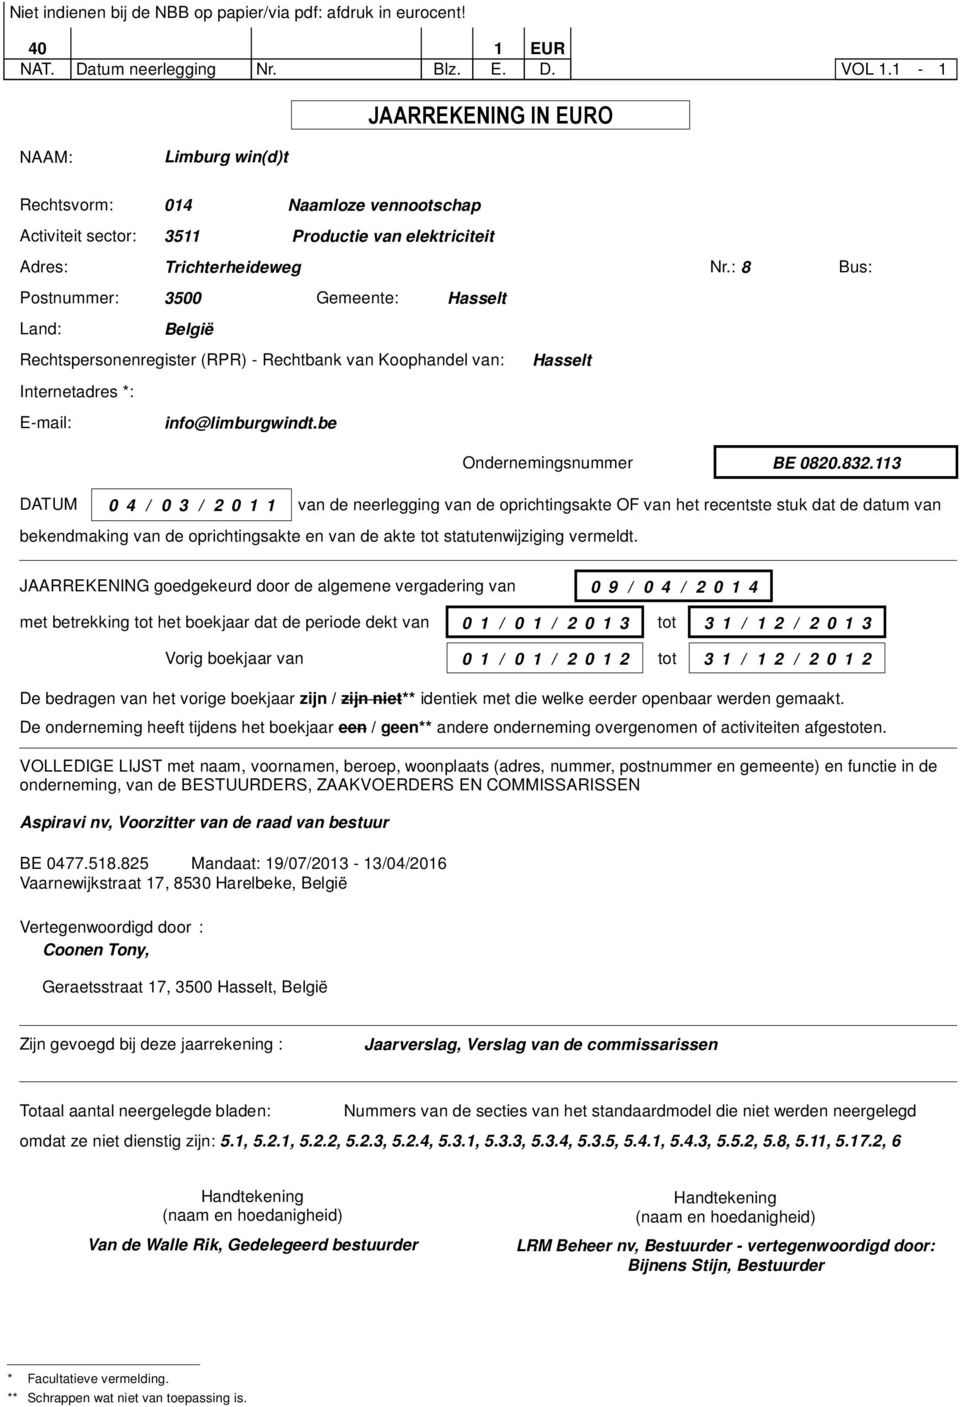 : 8 Bus: Postnummer: 3500 Gemeente: Hasselt Land: België Rechtspersonenregister (RPR) - Rechtbank van Koophandel van: Hasselt Internetadres *: E-mail: info@limburgwindt.be Ondernemingsnummer BE 0820.